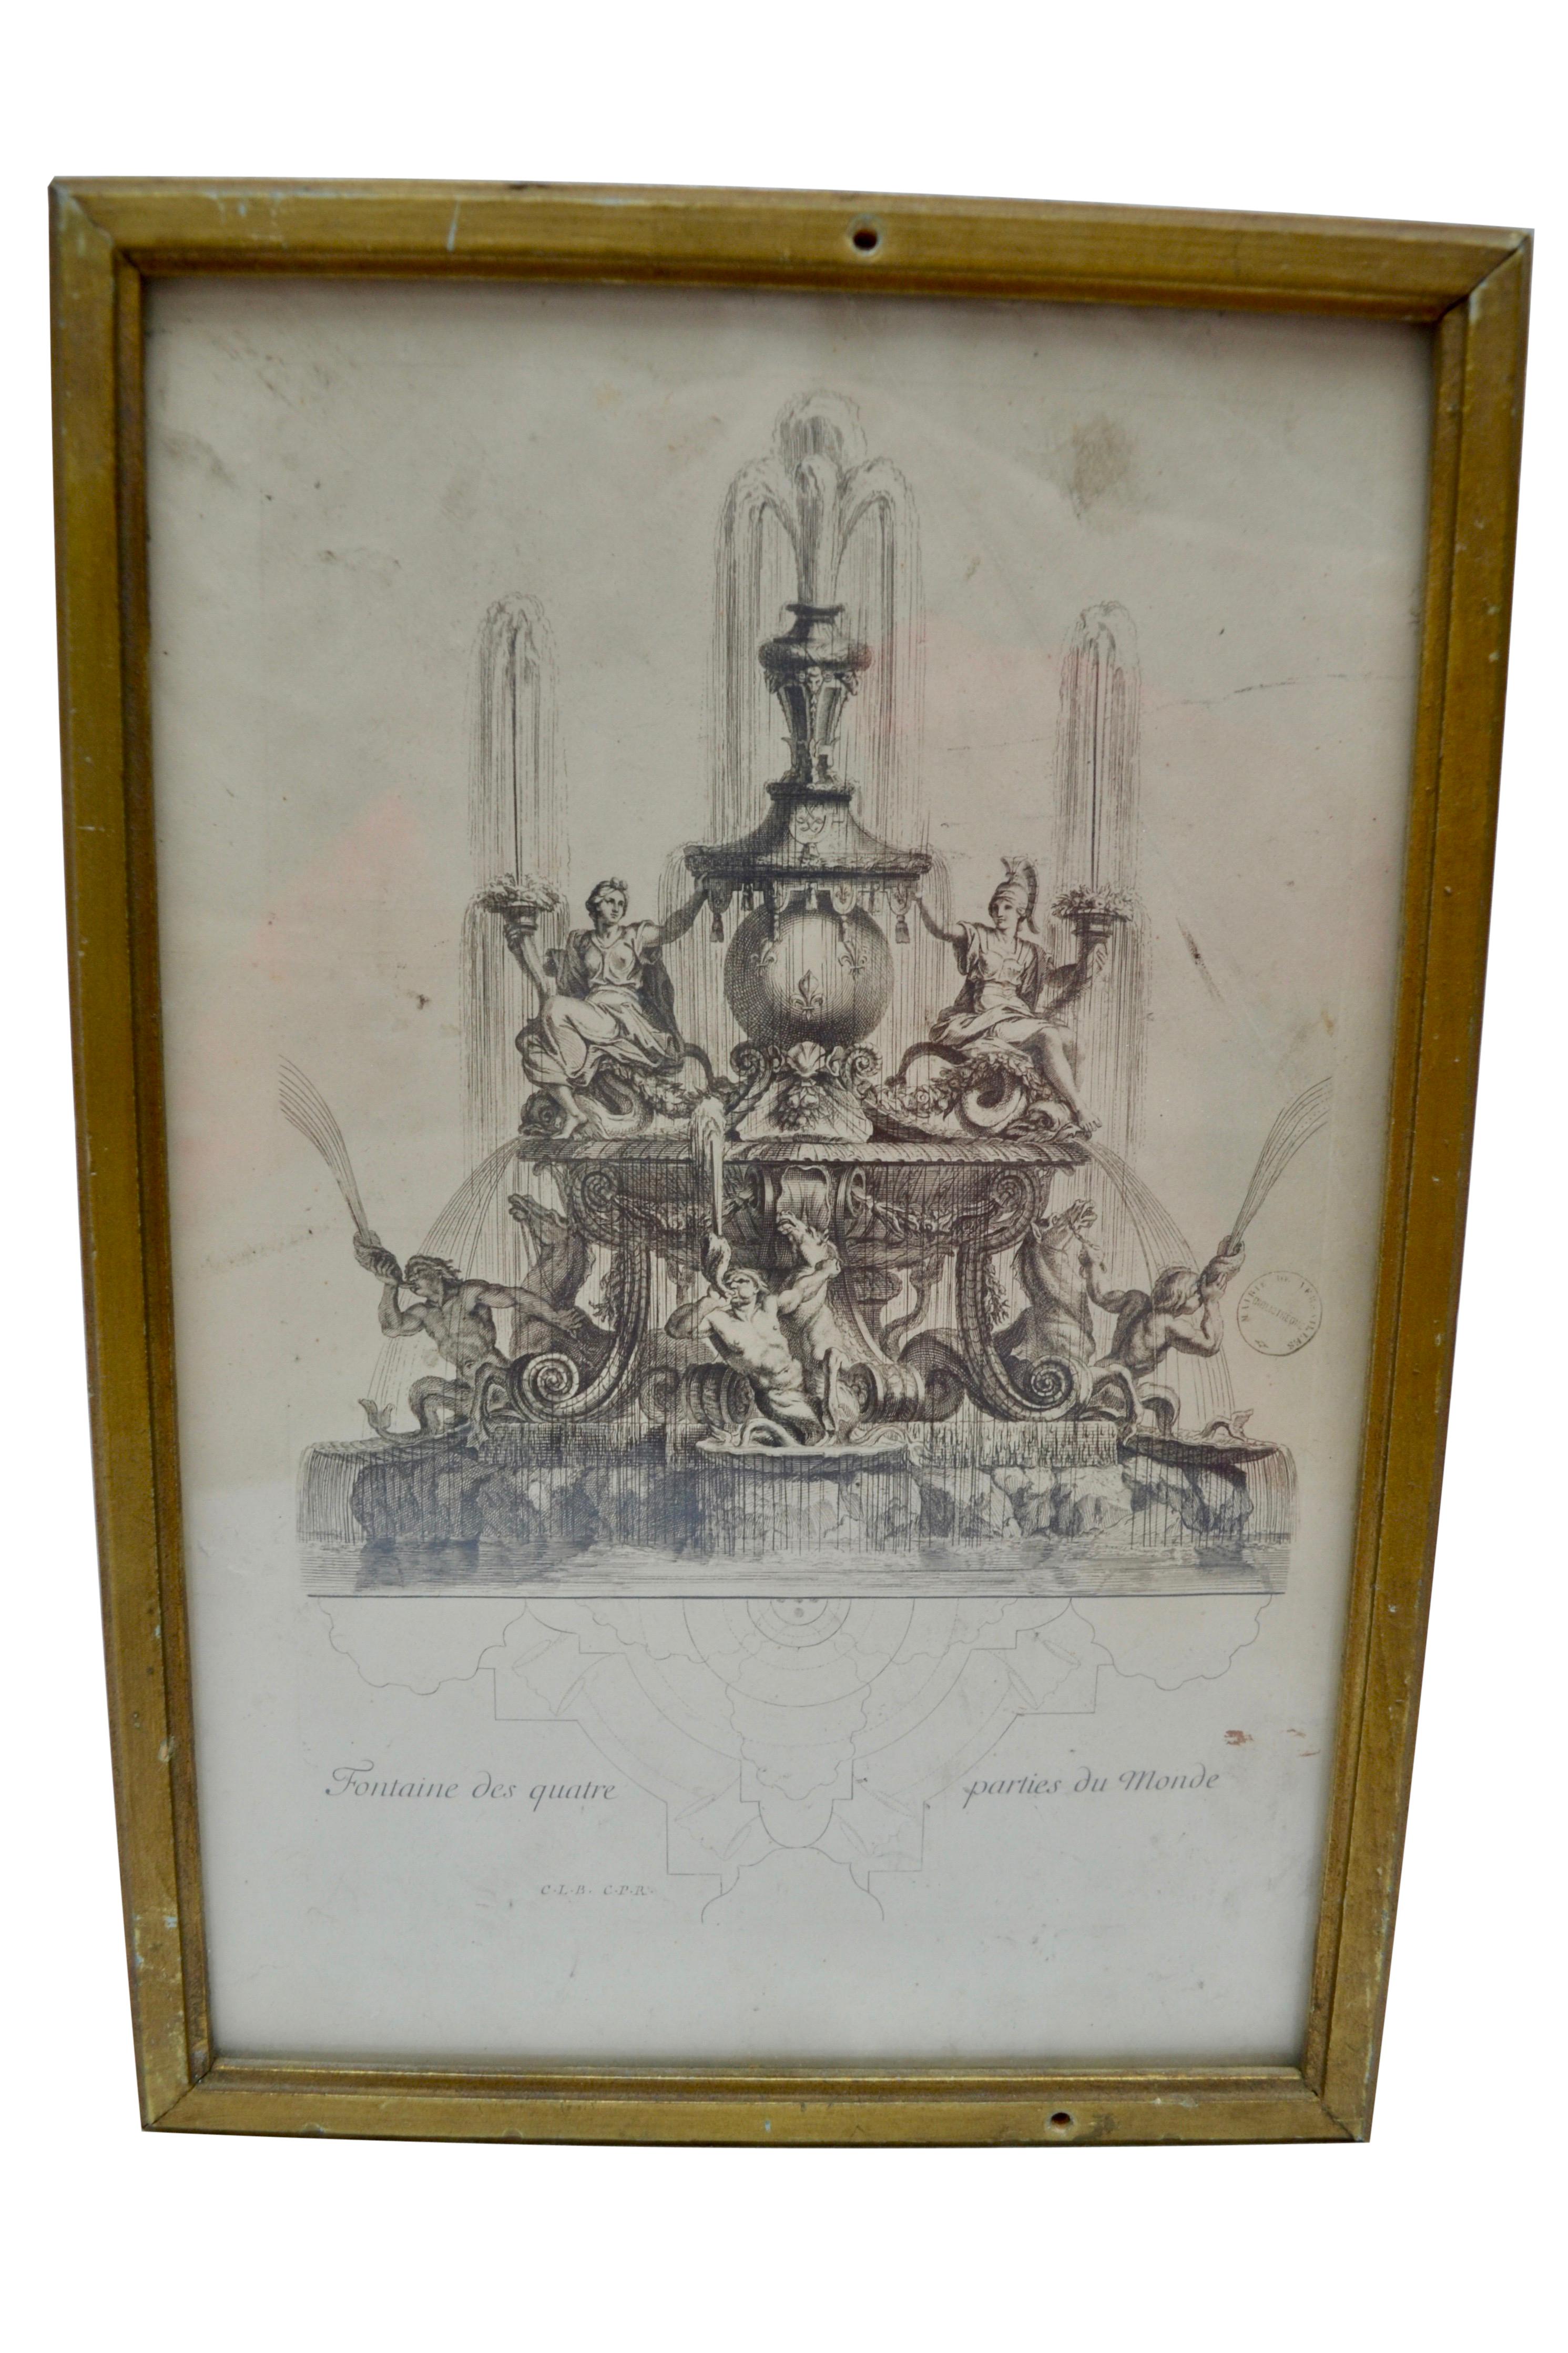 Trois petites gravures du XVIIIe siècle représentant des fontaines des jardins de Versailles, réalisées par le célèbre graveur parisien Antoine Aveline. Toutes trois sont présentées dans des cadres simples en bois doré.

L'une des fontaines montre